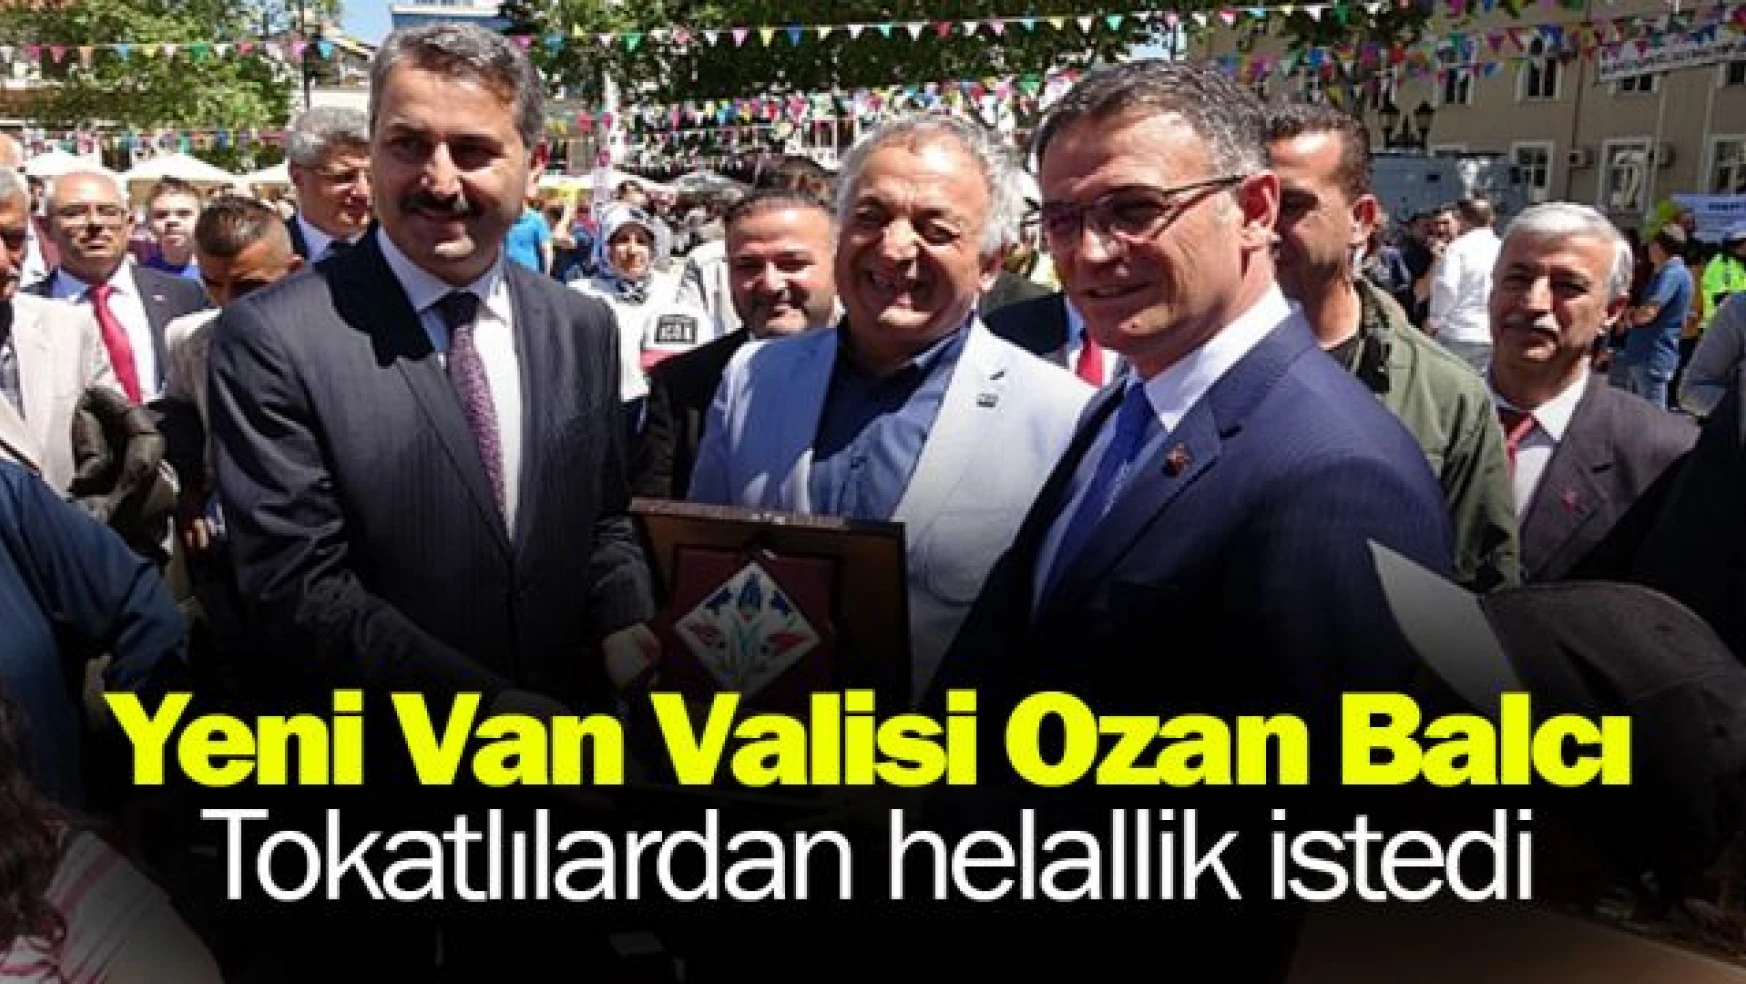 Yeni Van Valisi Ozan Balcı, Tokatlılardan helallik istedi